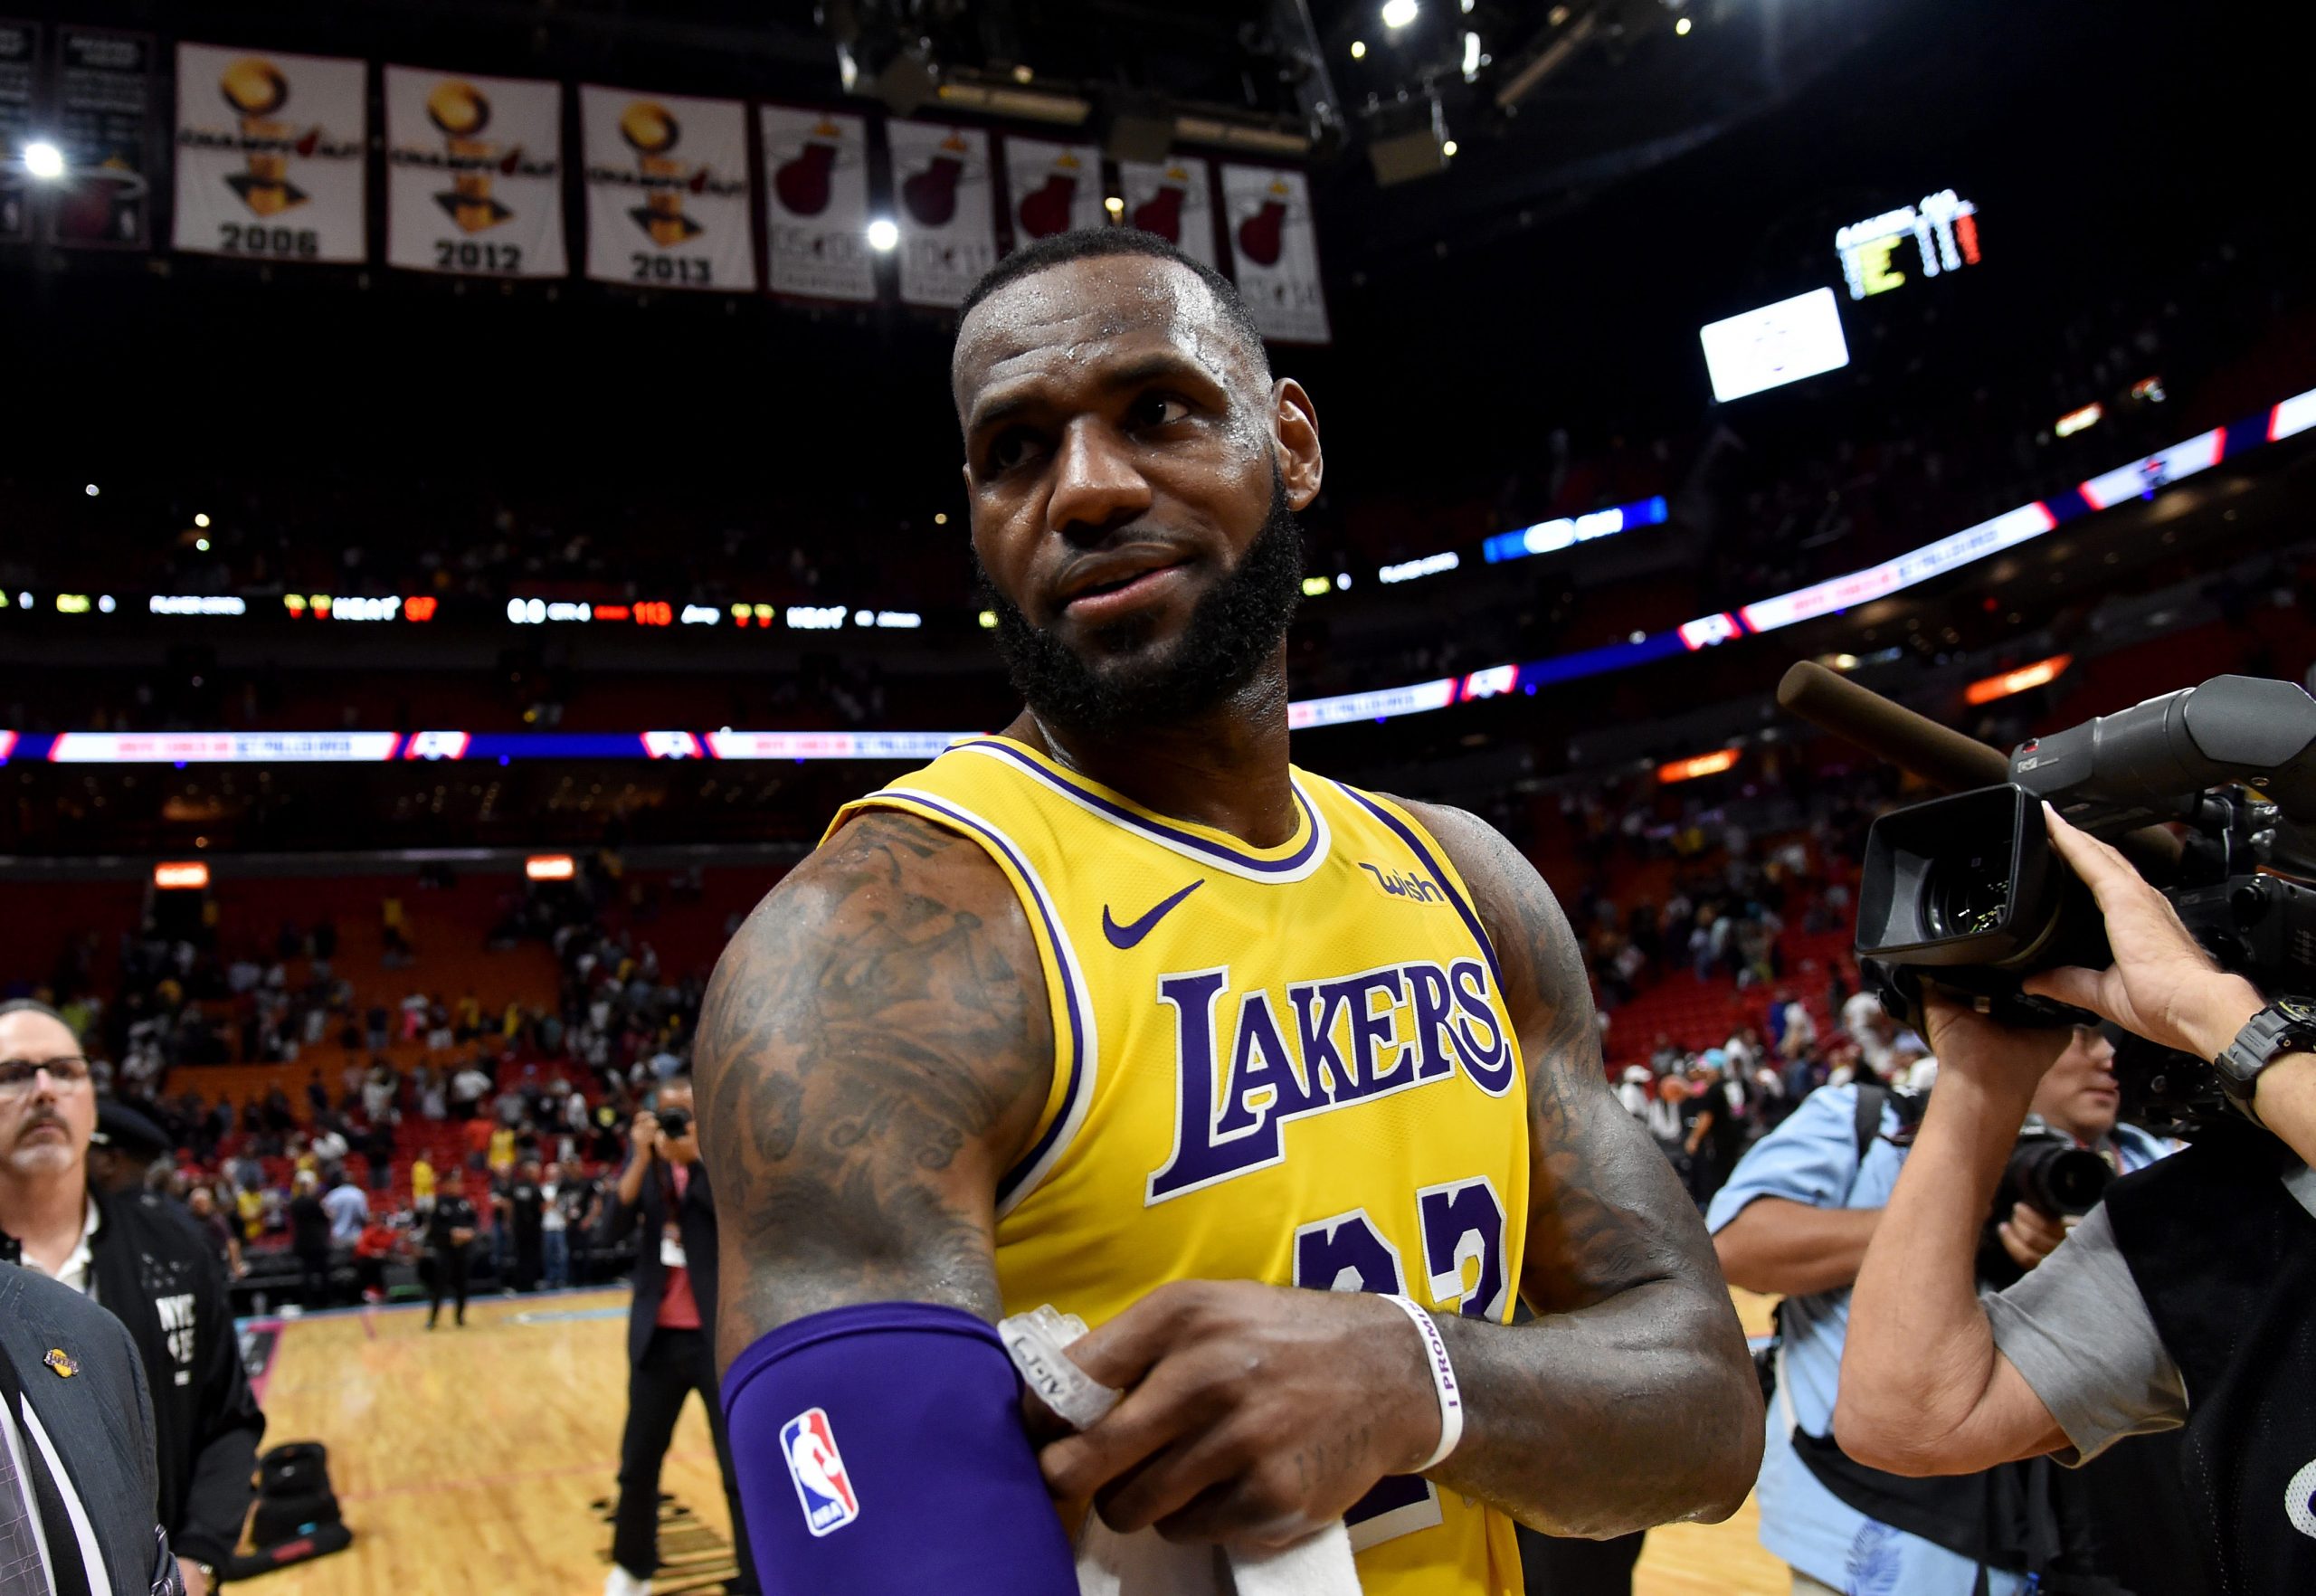 NBA: Los Angeles Lakers at Miami Heat